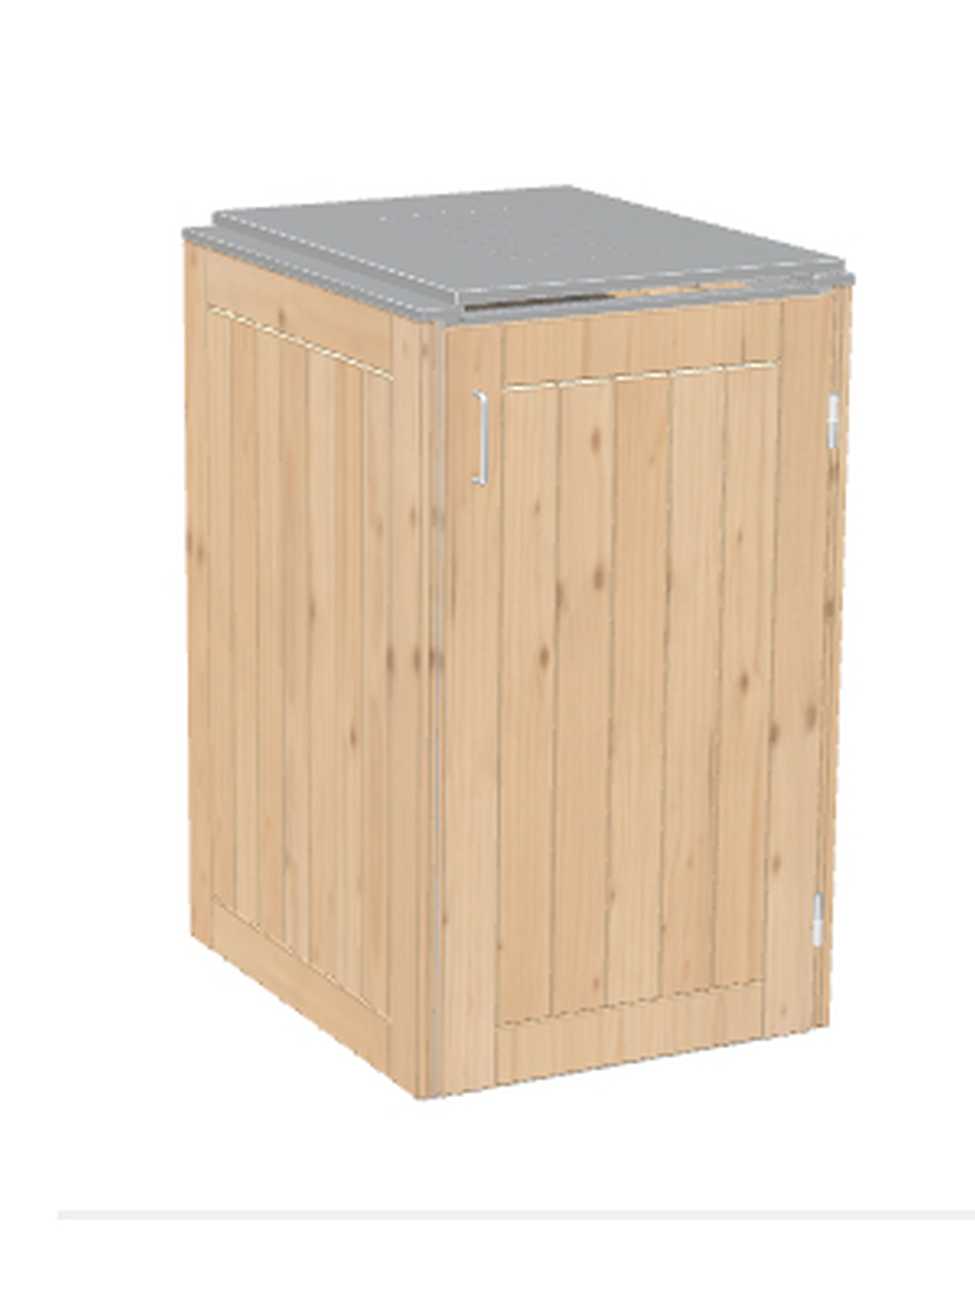 Müllbox Binto Nadelholz mit Edelstahl-Klappdeckel